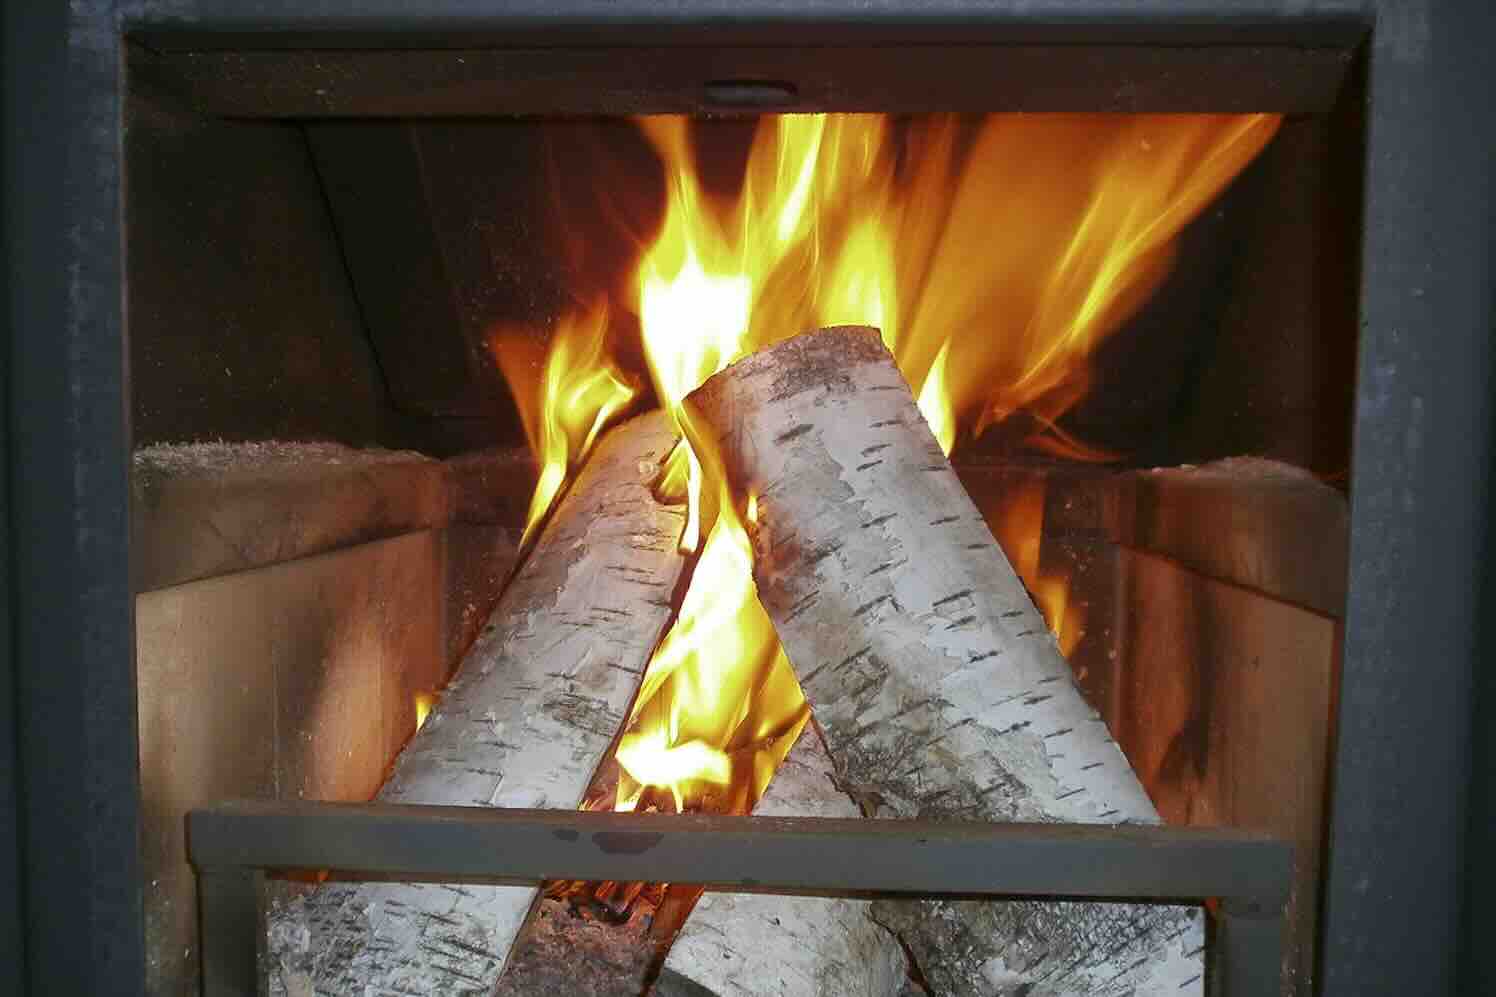 Is zelf gekapt hout geschikt brandhout?